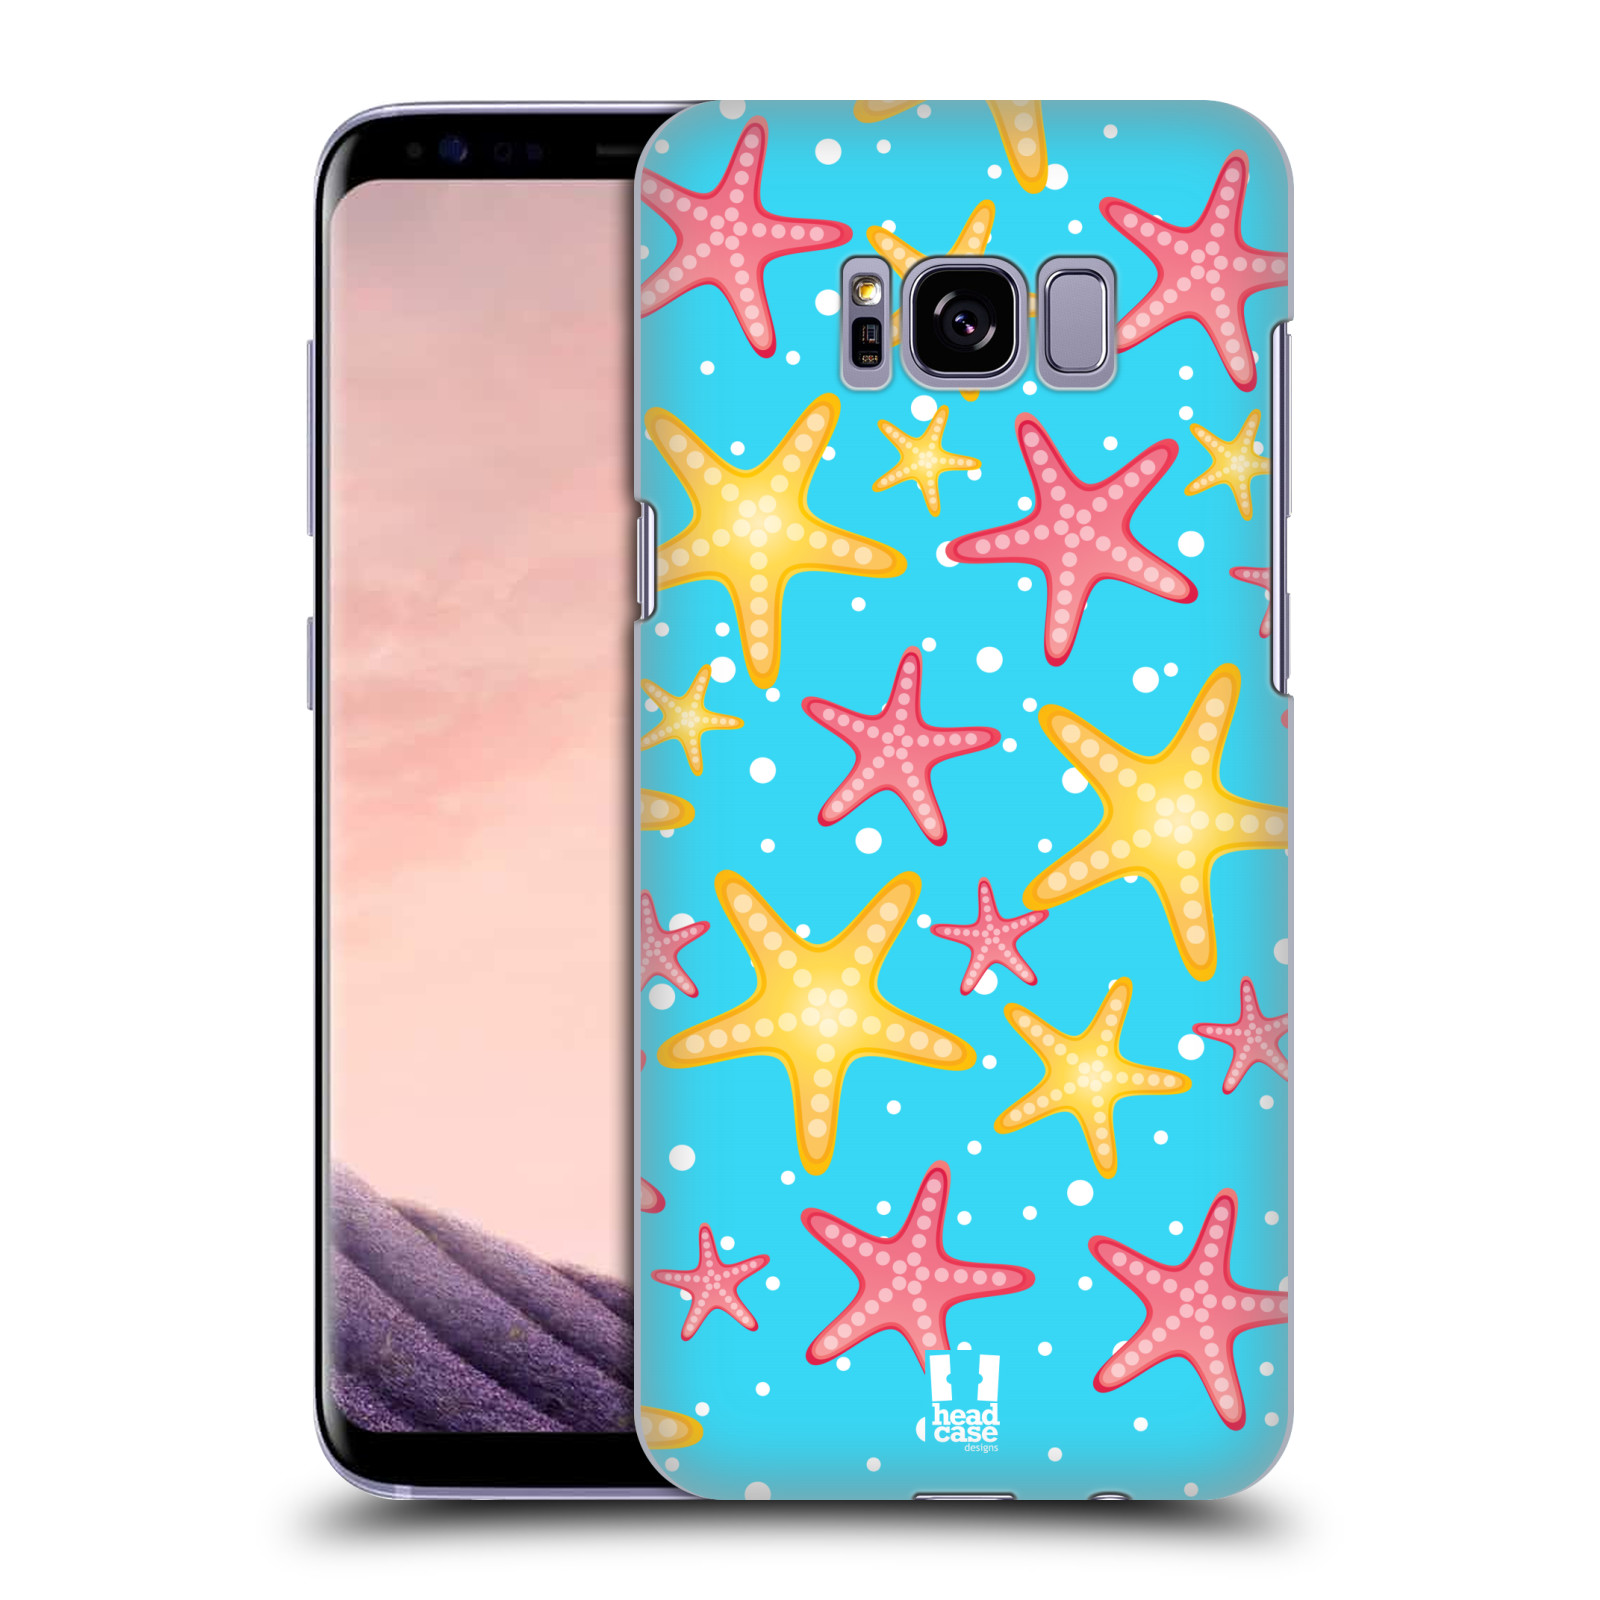 Zadní obal pro mobil Samsung Galaxy S8 PLUS - HEAD CASE - kreslený mořský vzor hvězda